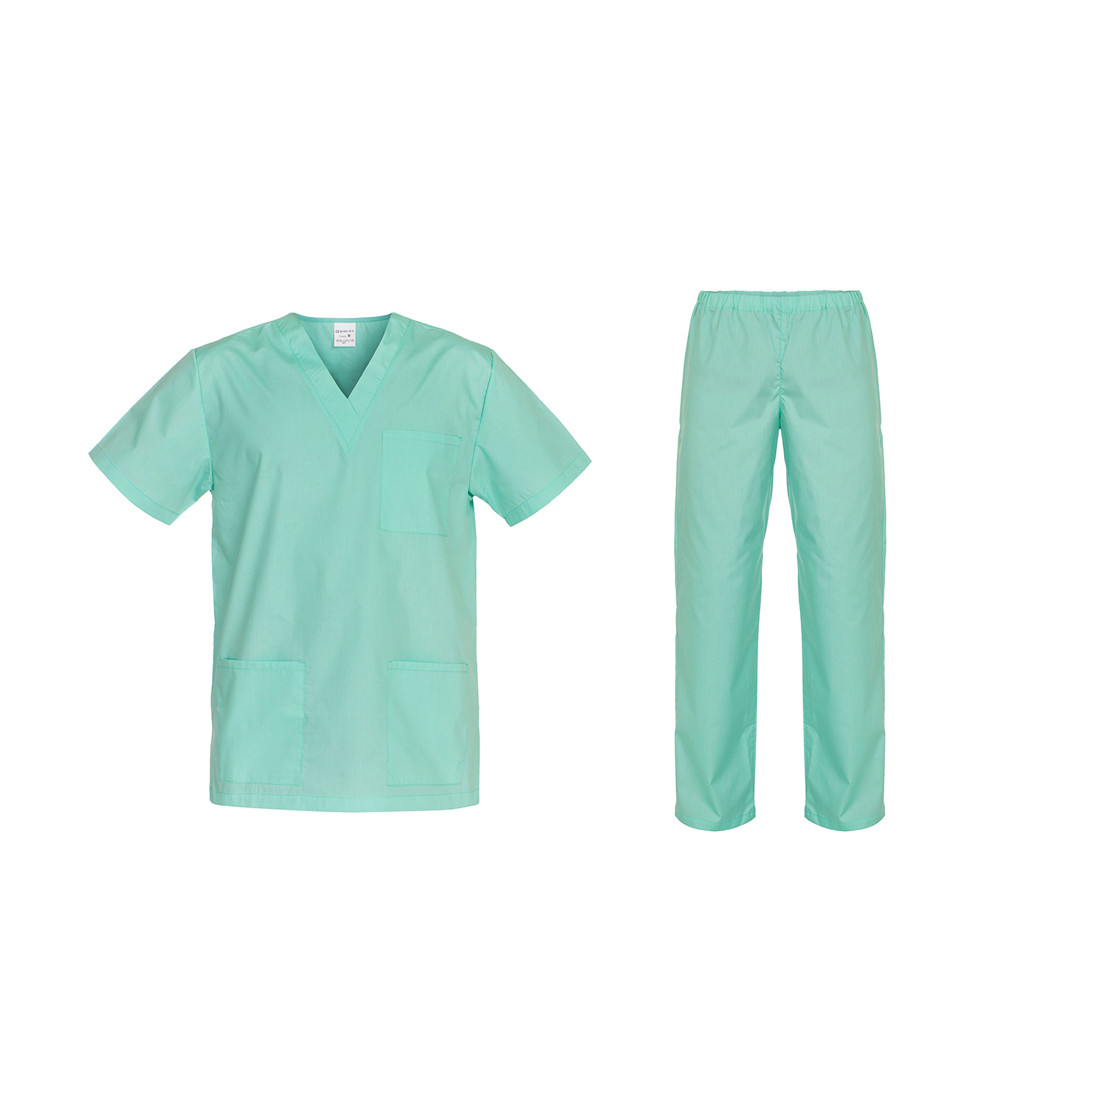 Combinaison médicale unisexe CESARE, plain 110 gr - Les vêtements de protection